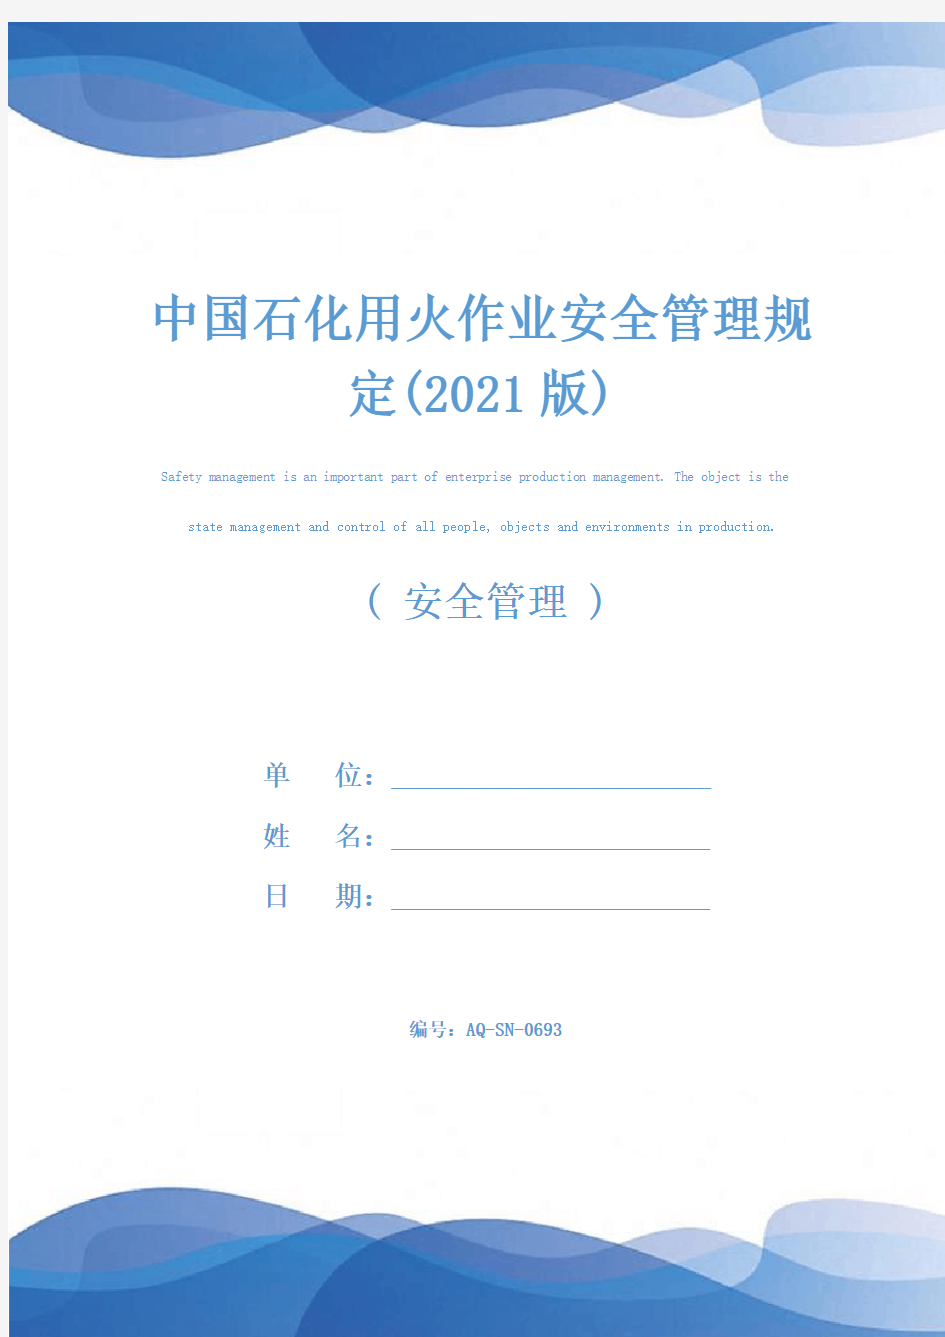 中国石化用火作业安全管理规定(2021版)